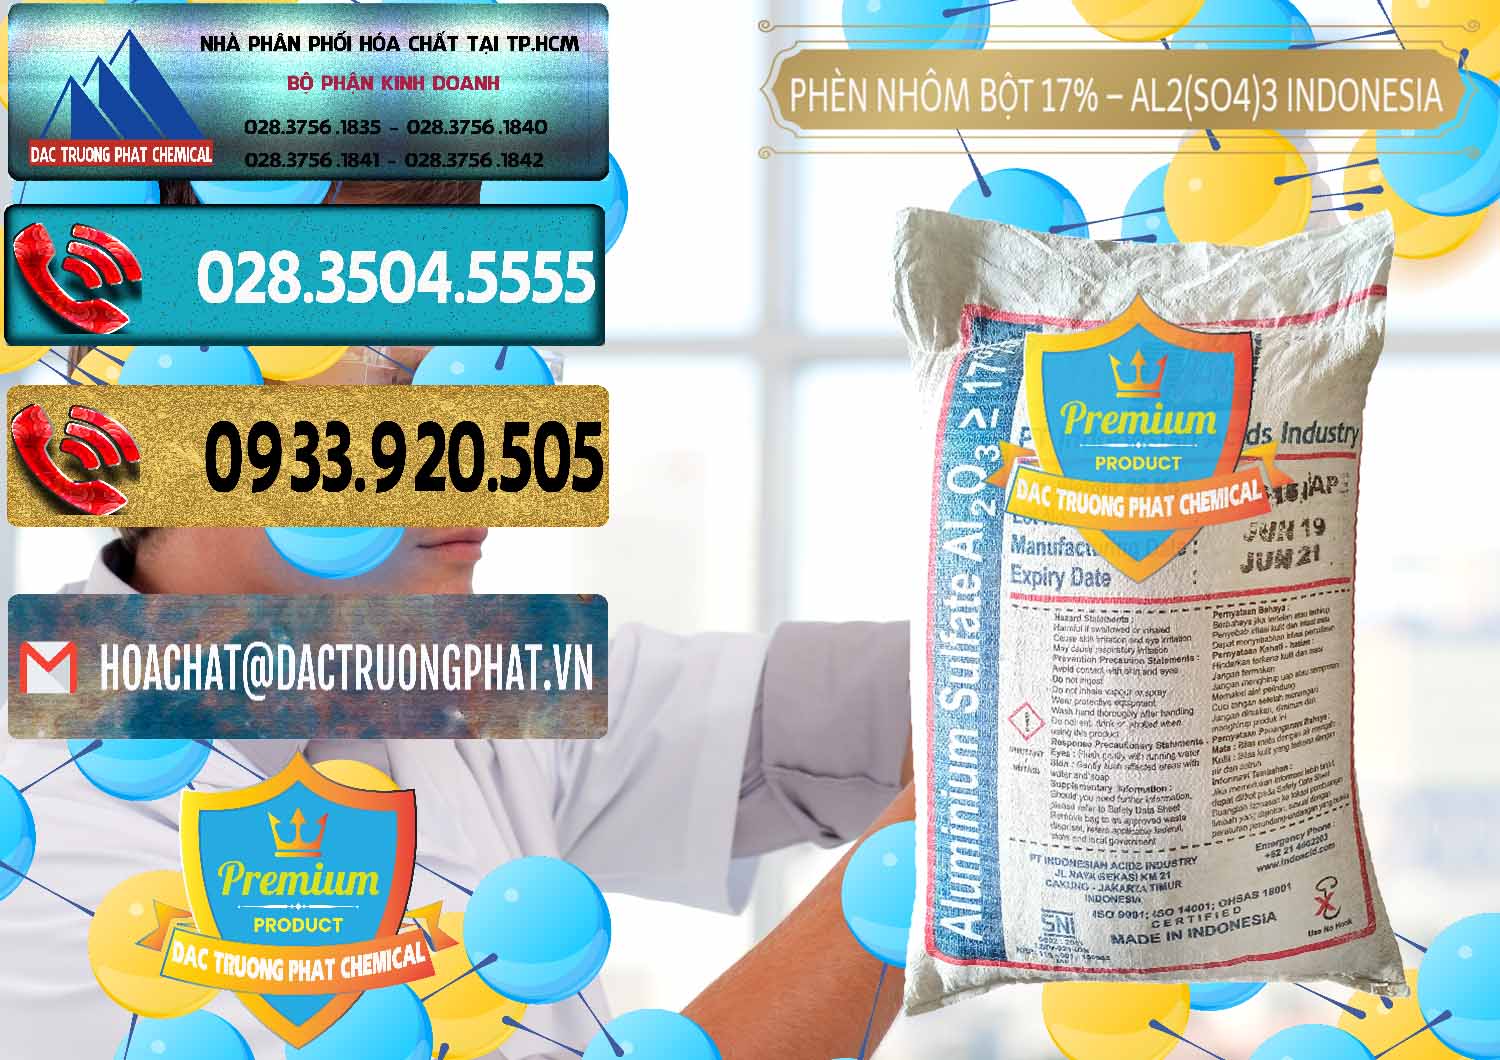 Công ty bán - phân phối Phèn Nhôm Bột - Al2(SO4)3 17% bao 25kg Indonesia - 0114 - Nhà cung cấp ( phân phối ) hóa chất tại TP.HCM - hoachatdetnhuom.com